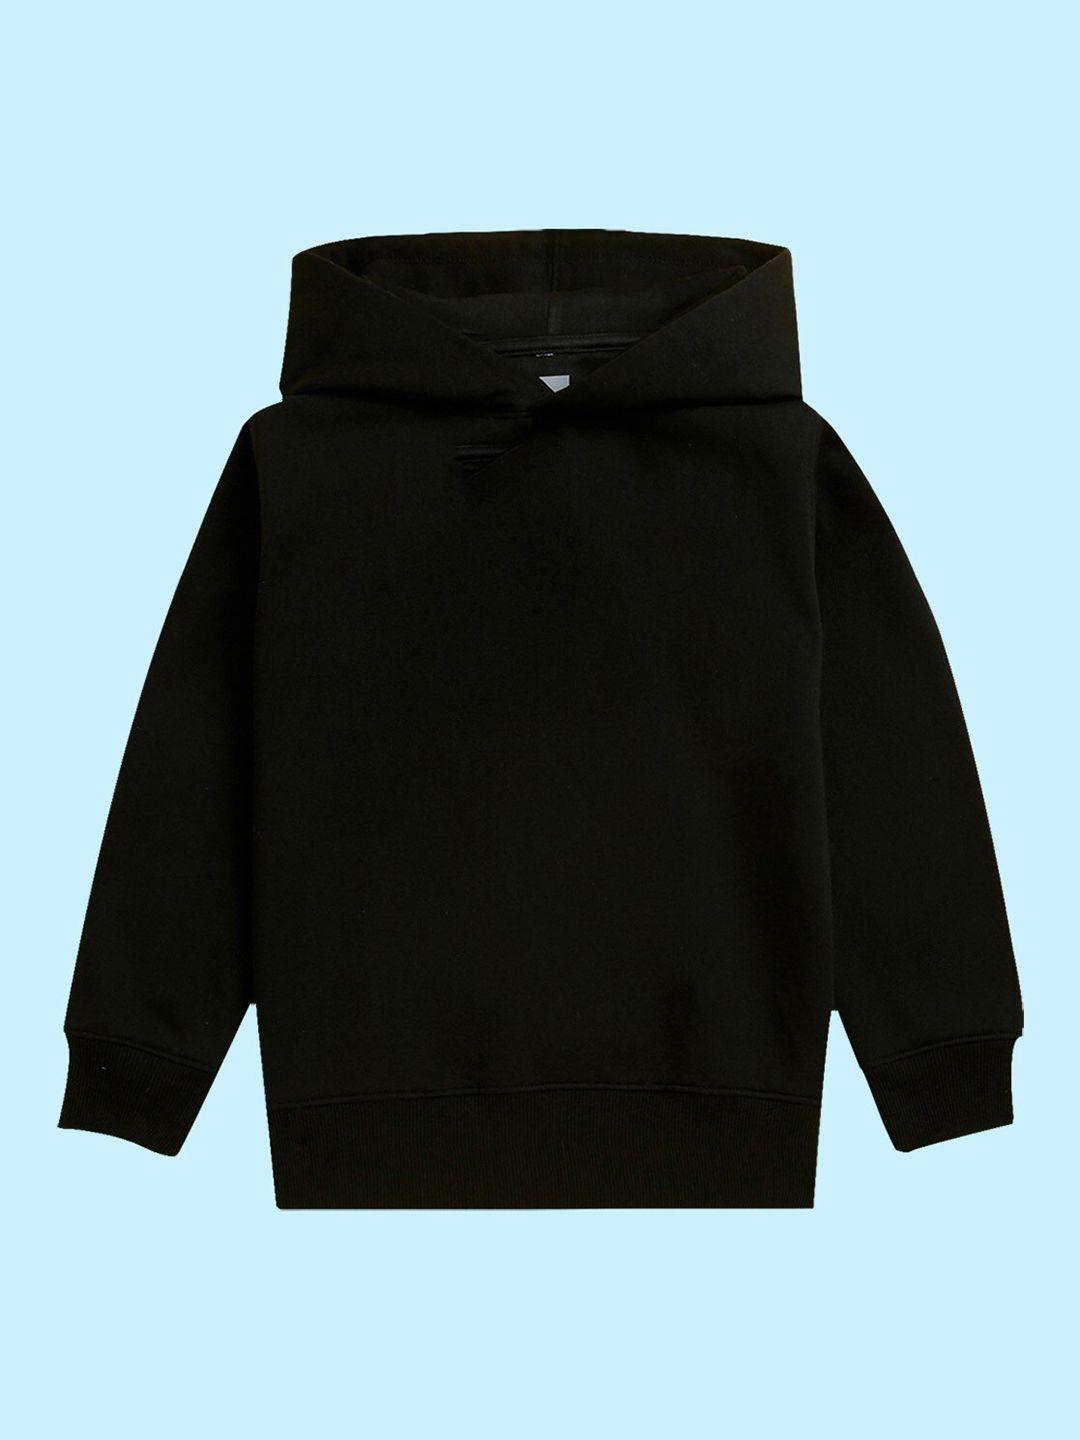 nusyl kids hooded pullover sweatshirt